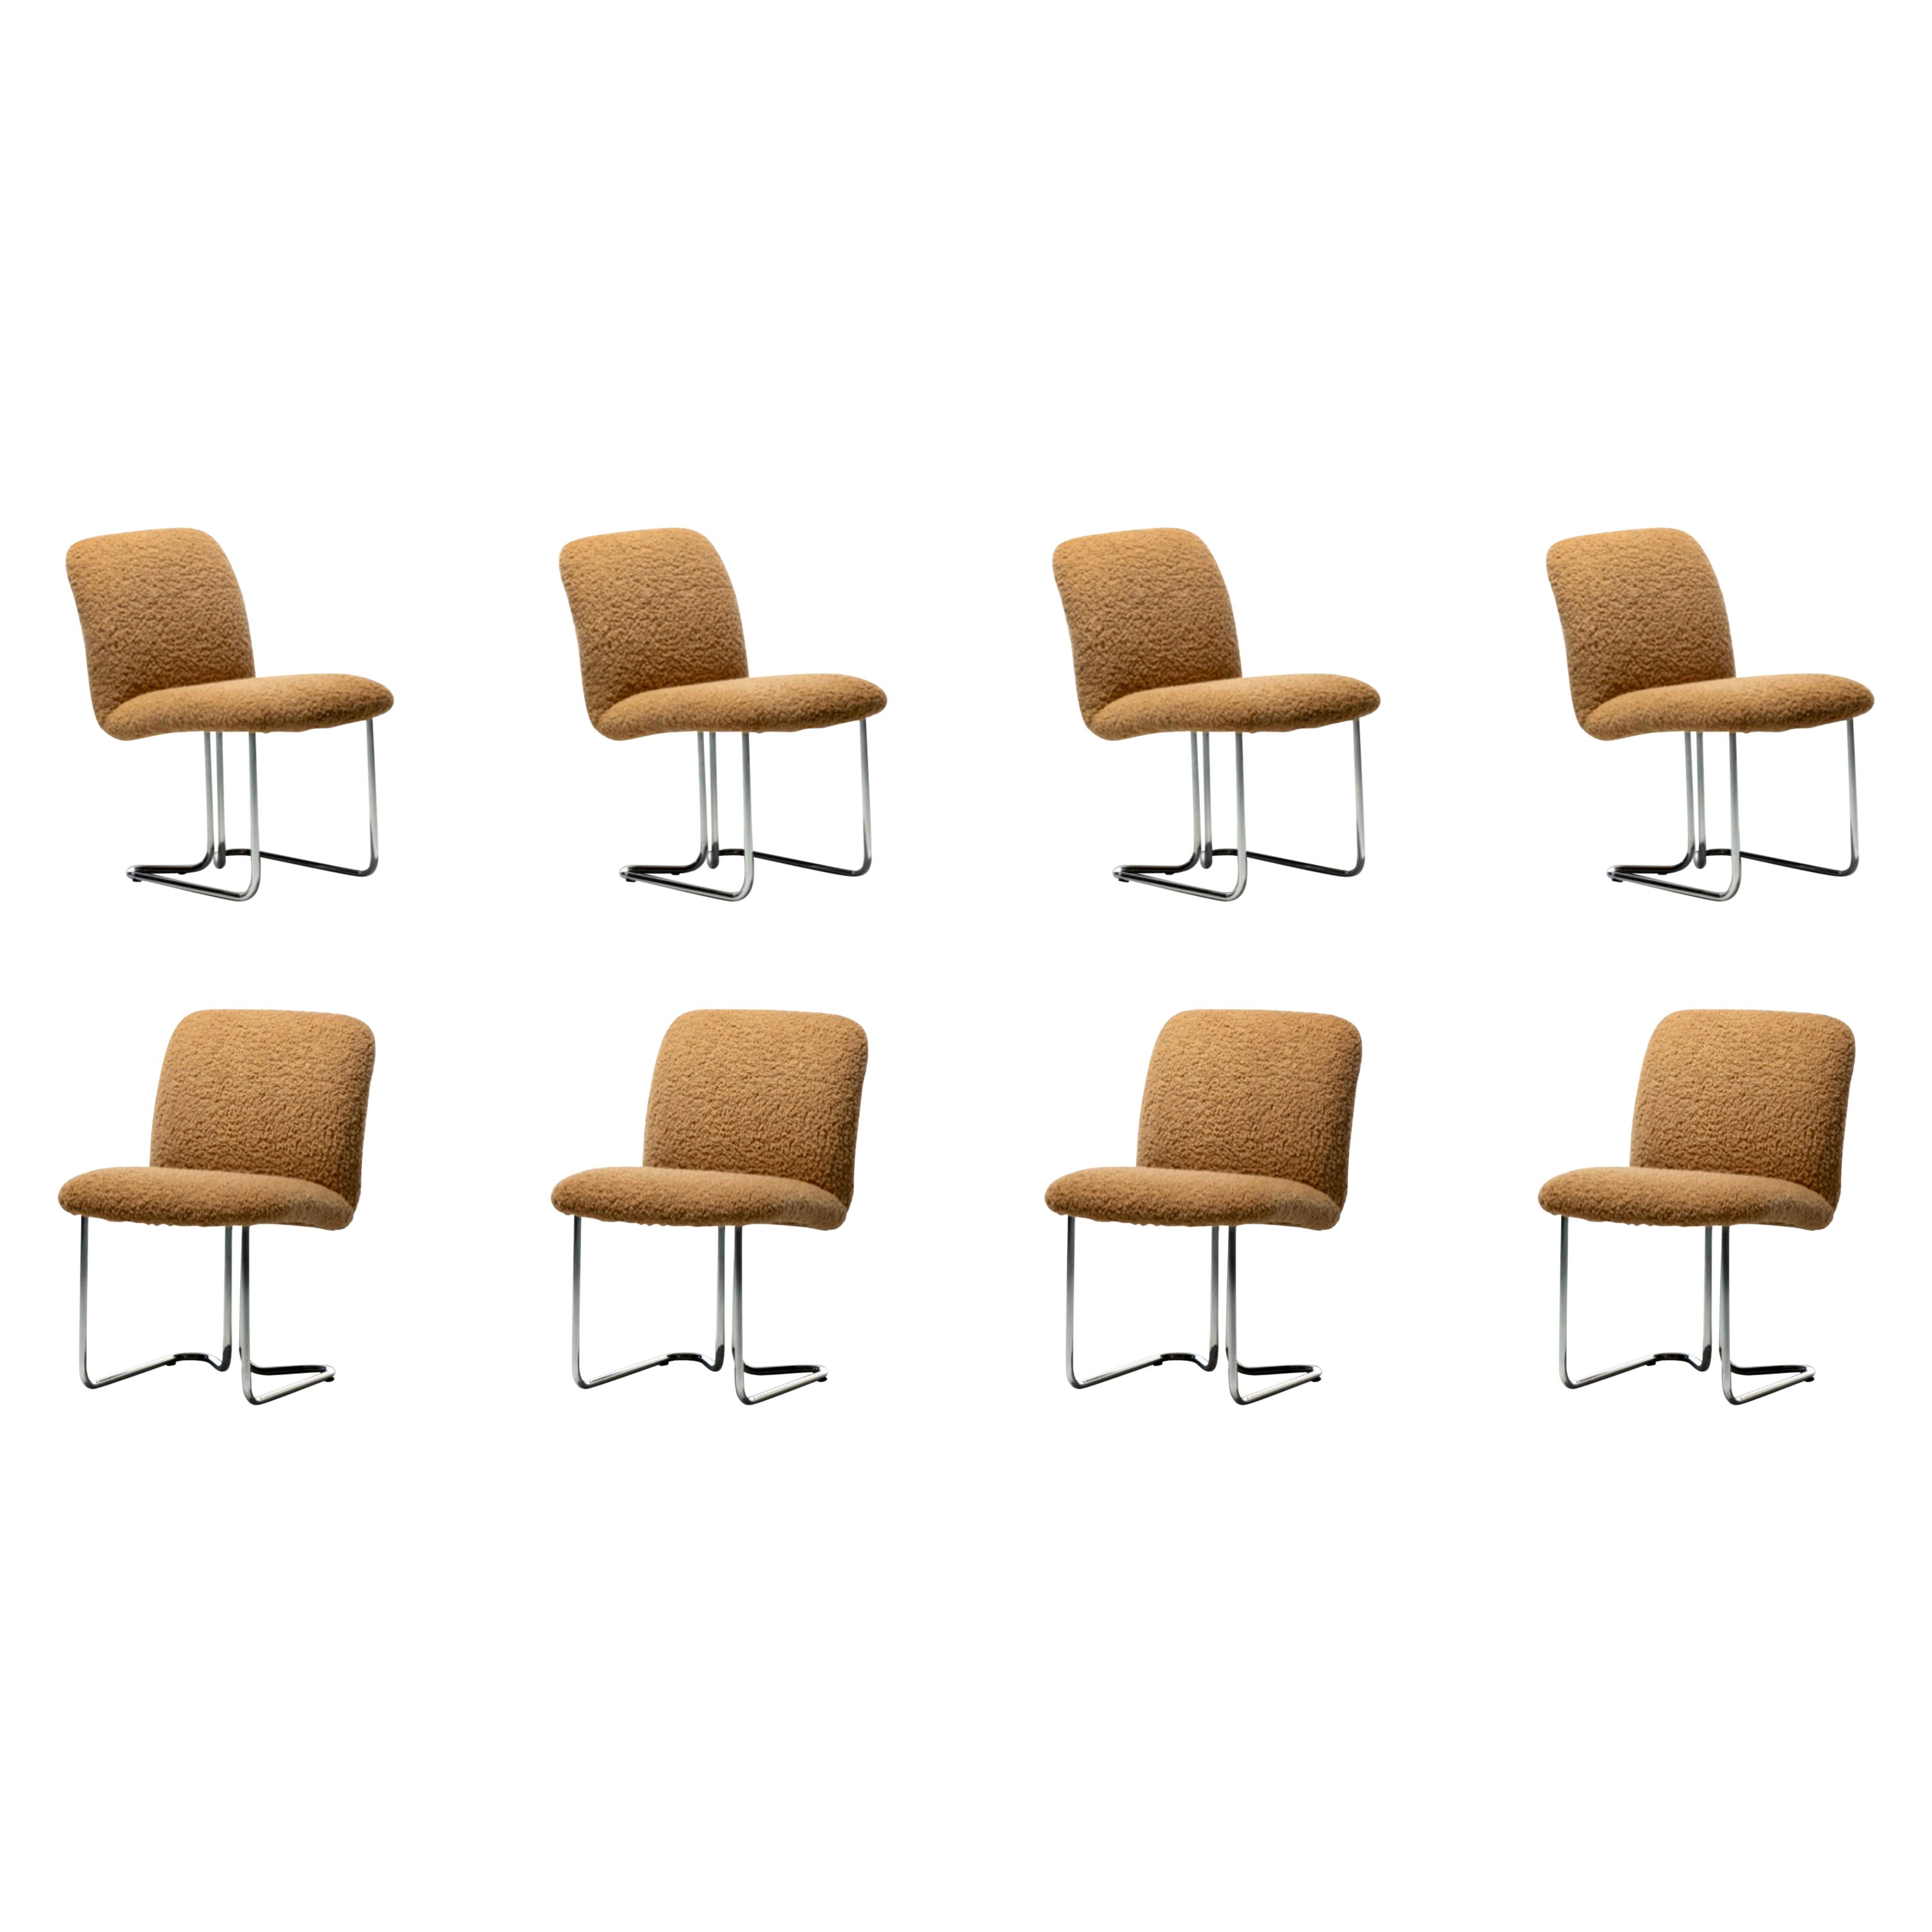 Set aus 8 verchromten Esszimmerstühlen des Design Institute of America in Camel Bouclé